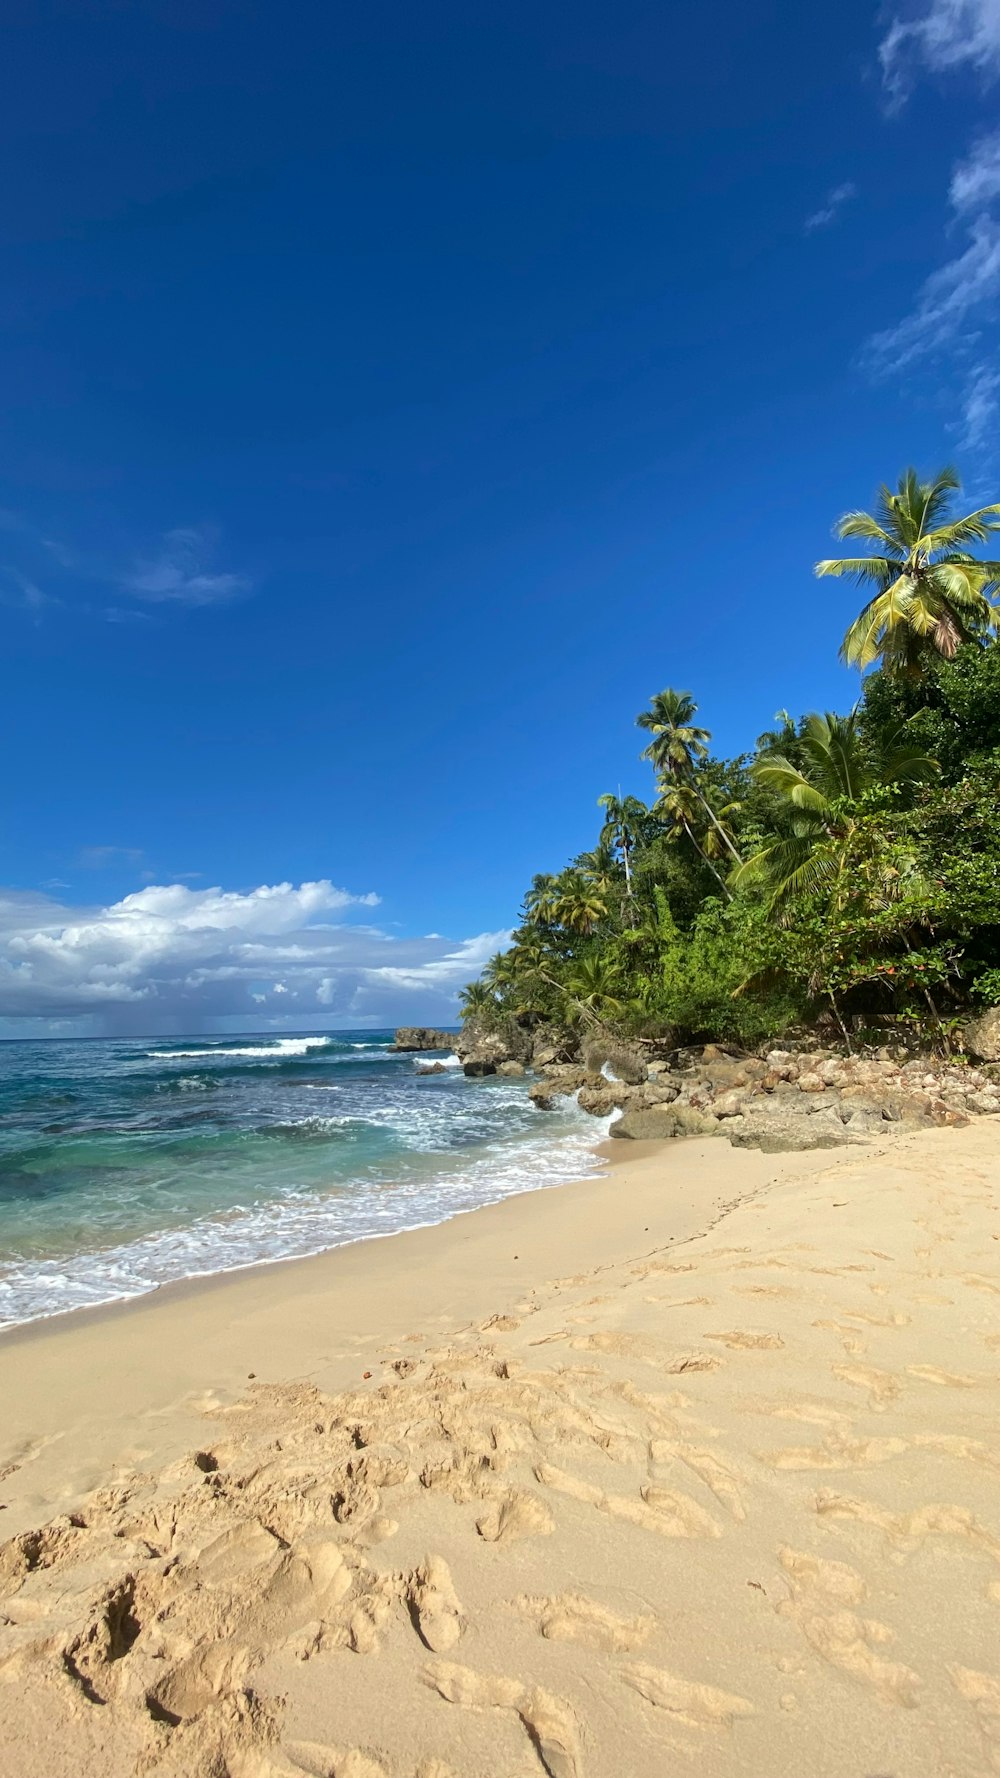 Una playa de arena junto al océano con palmeras